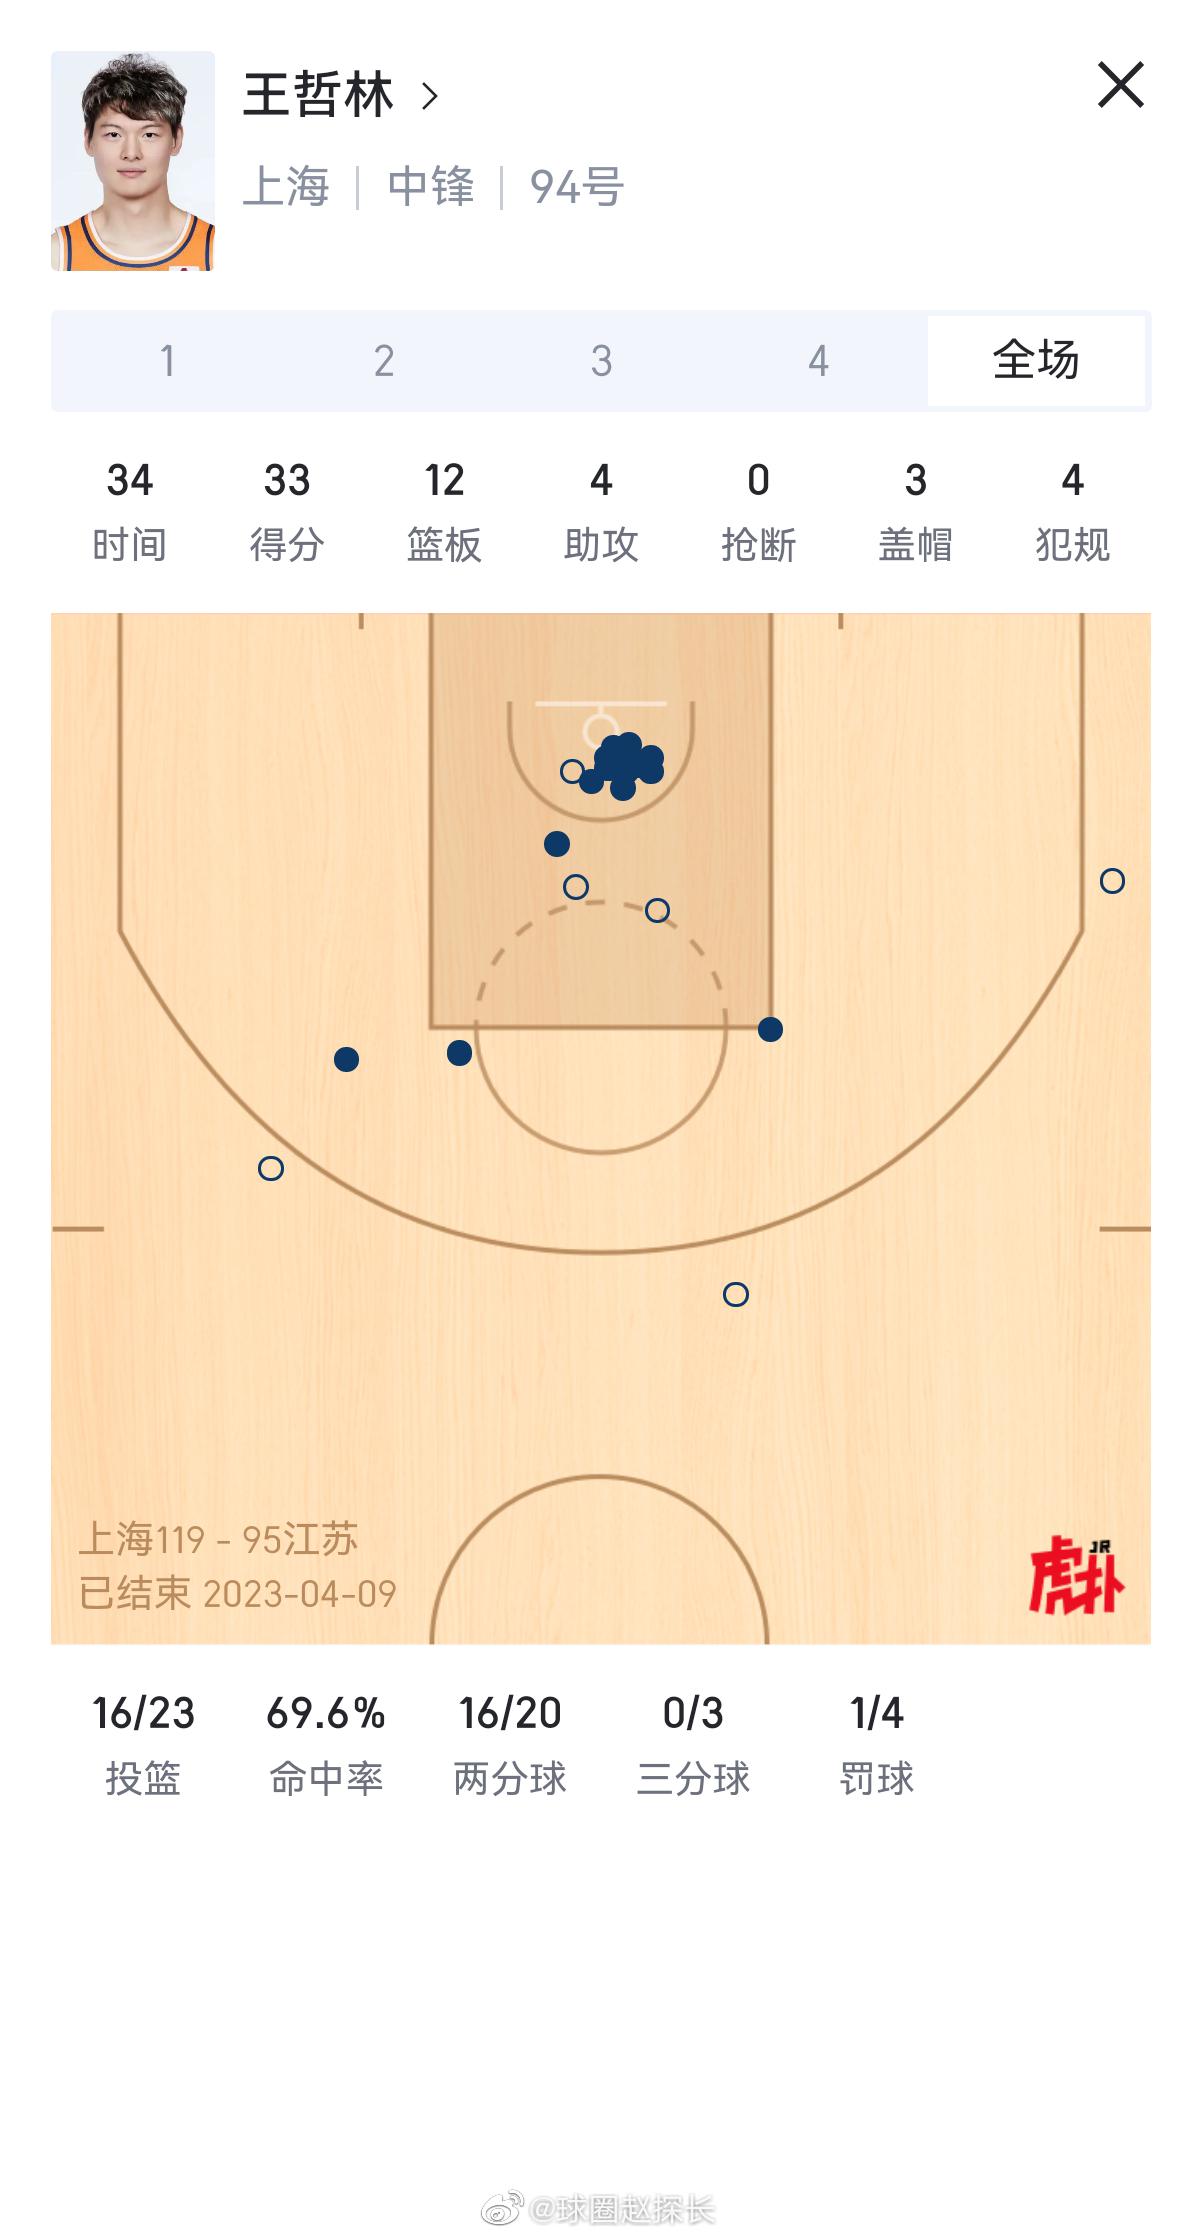 上海119-95大胜江苏，场面上可以说是全面压制的。大王33分12篮板在内线翻江